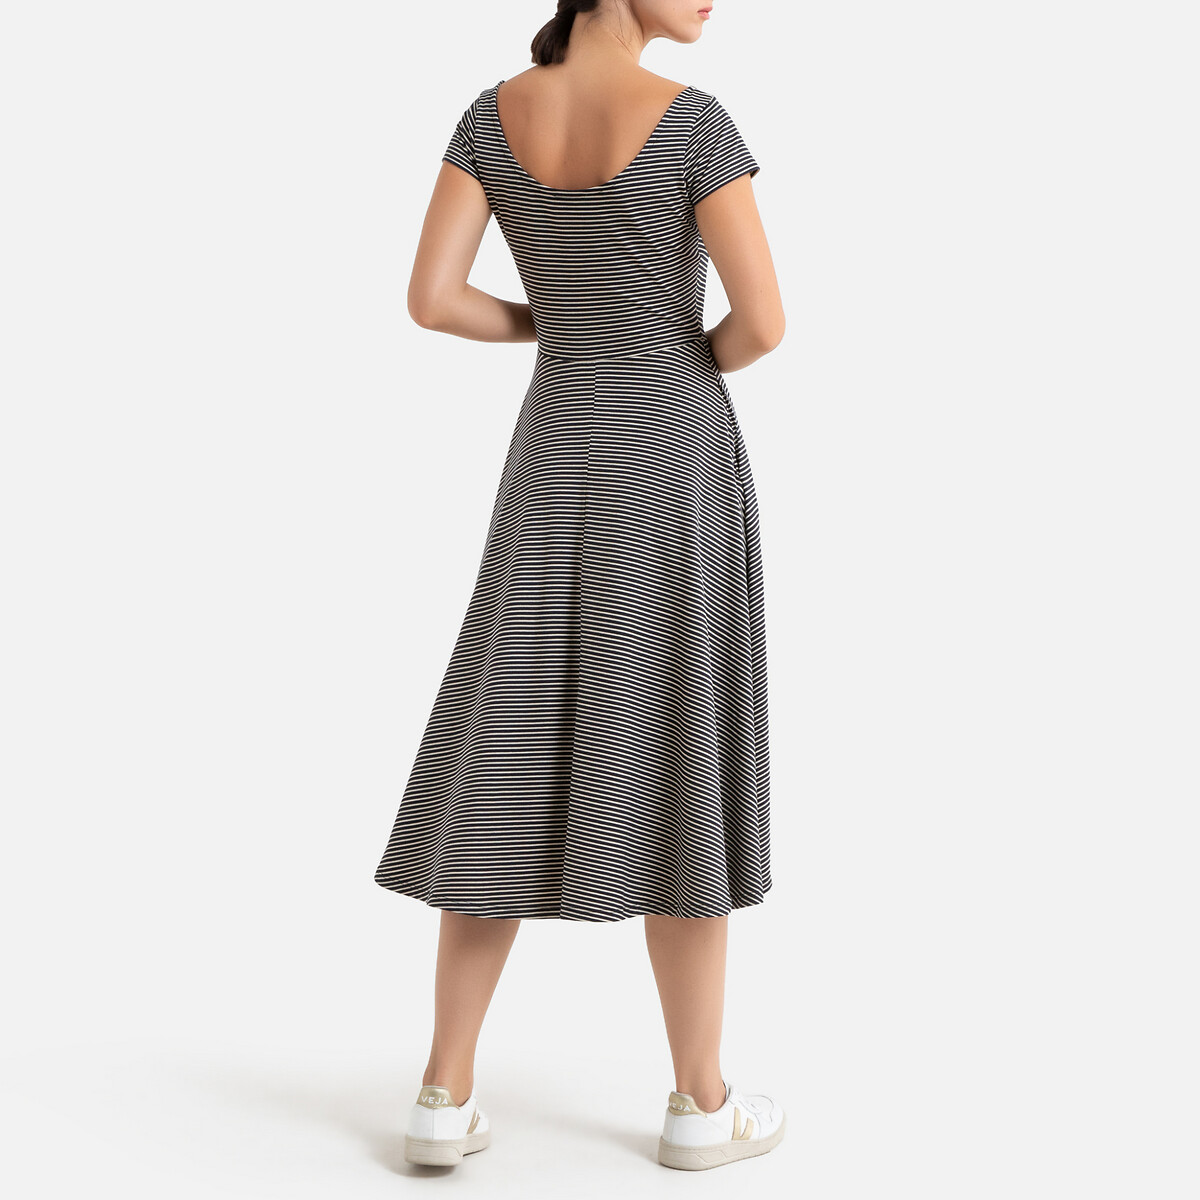 Платье La Redoute Длинное расклешенное в полоску с короткими рукавами XS бежевый, размер XS - фото 3